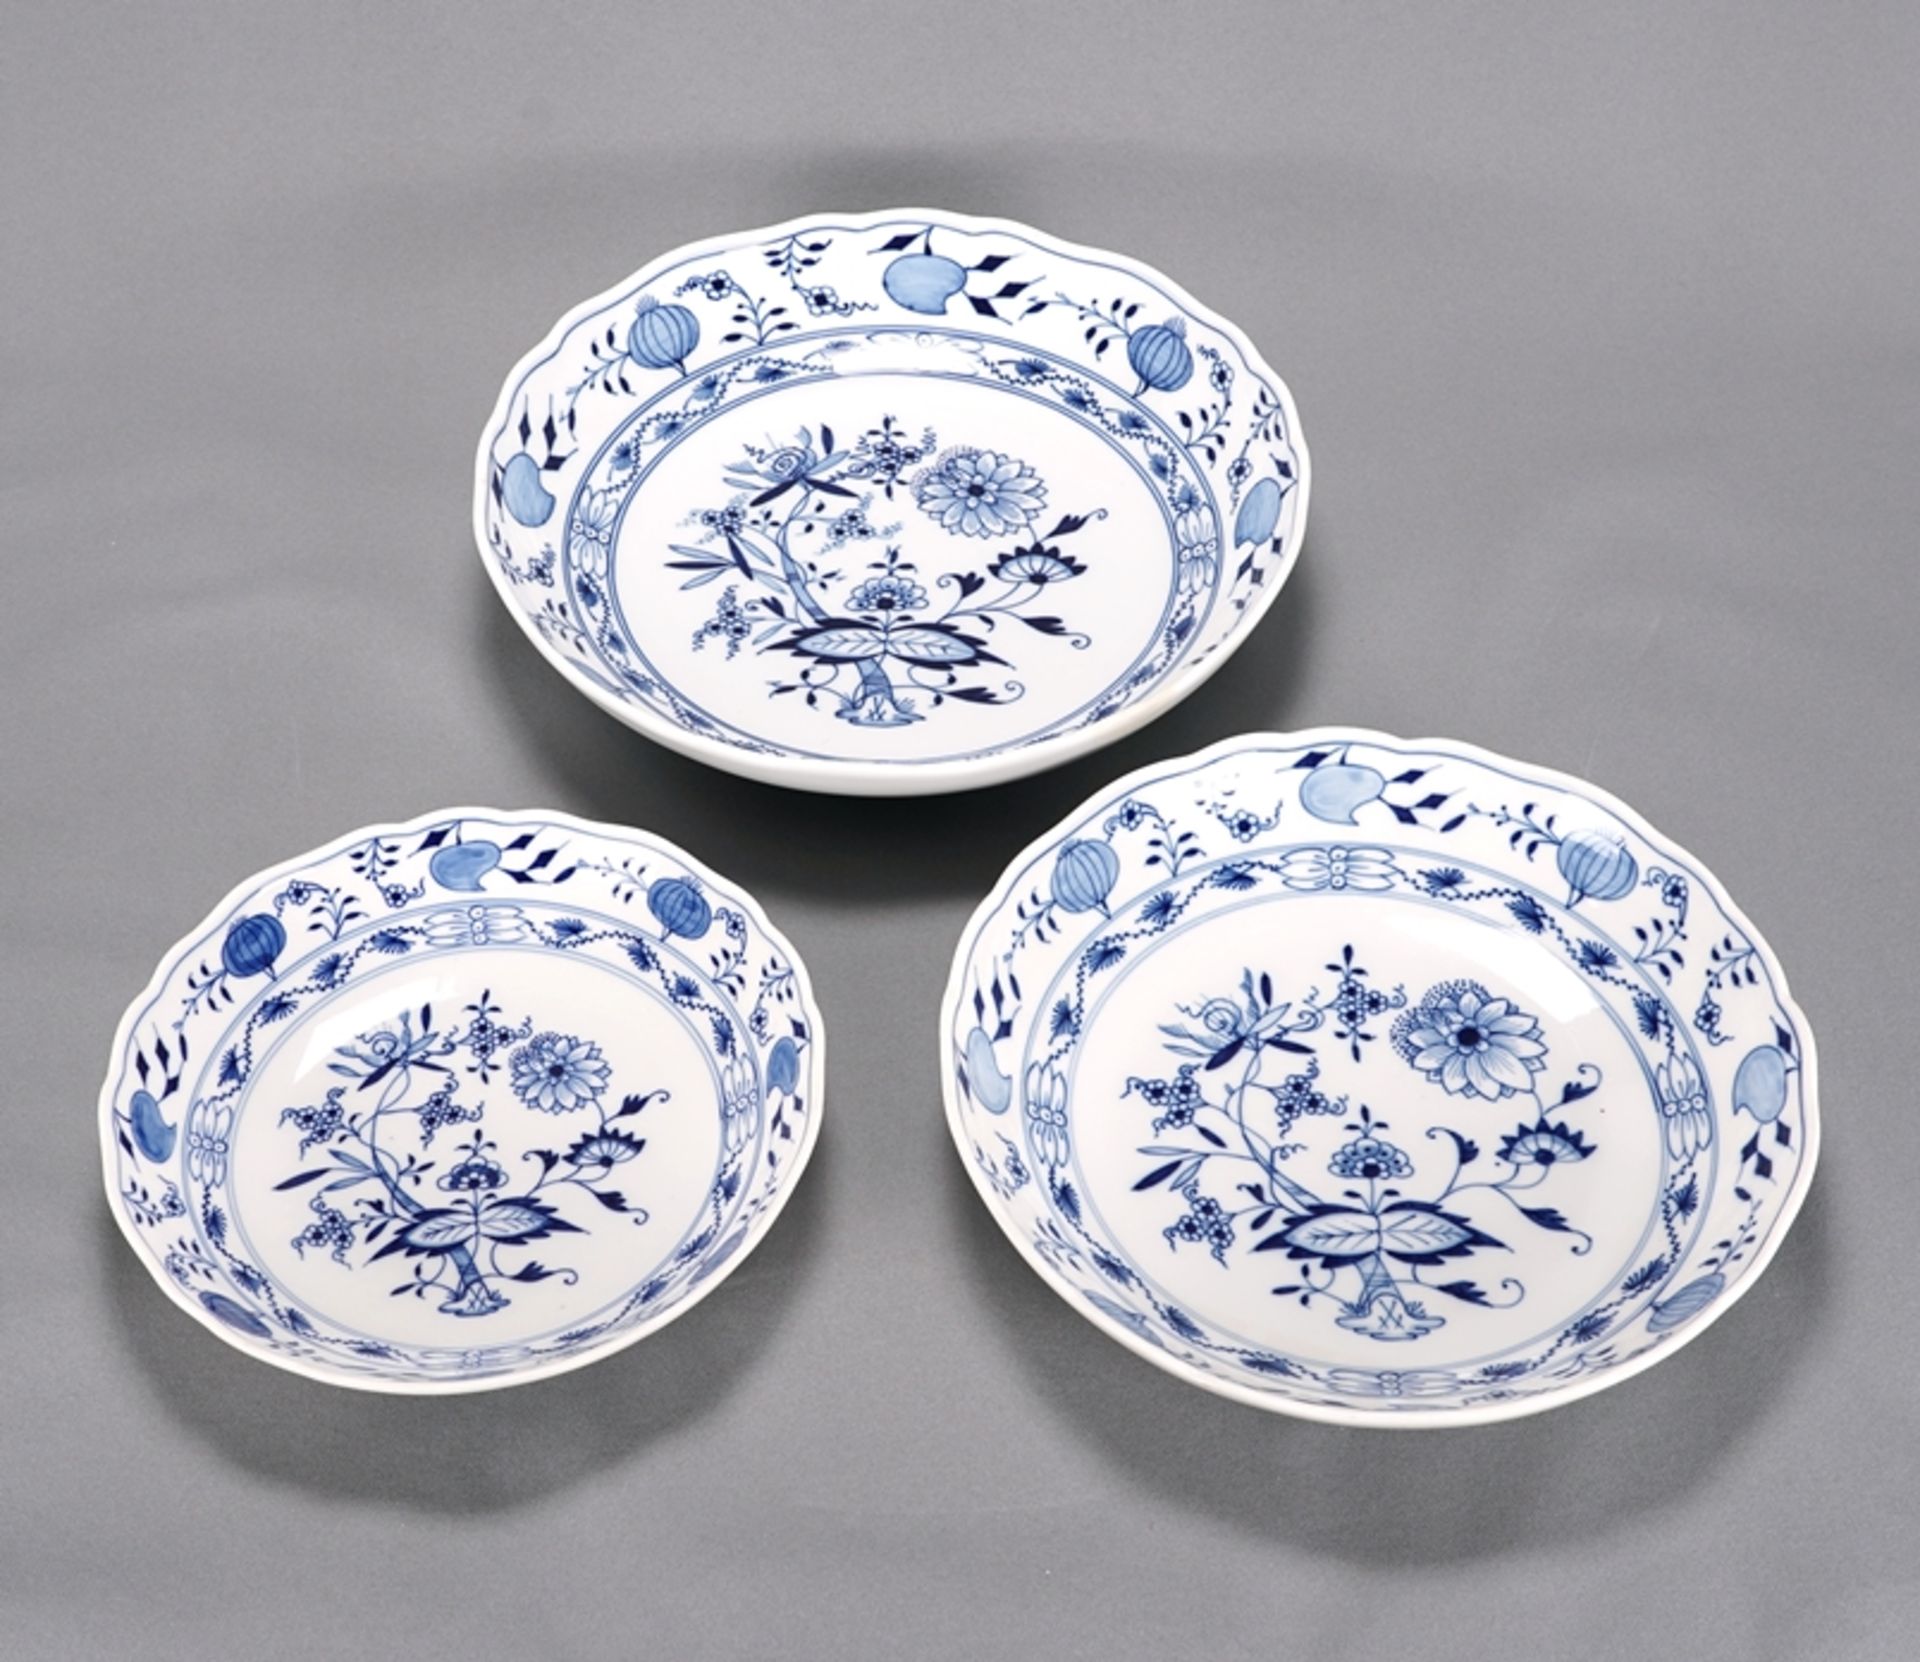 Three bowls Meissen - Image 2 of 4